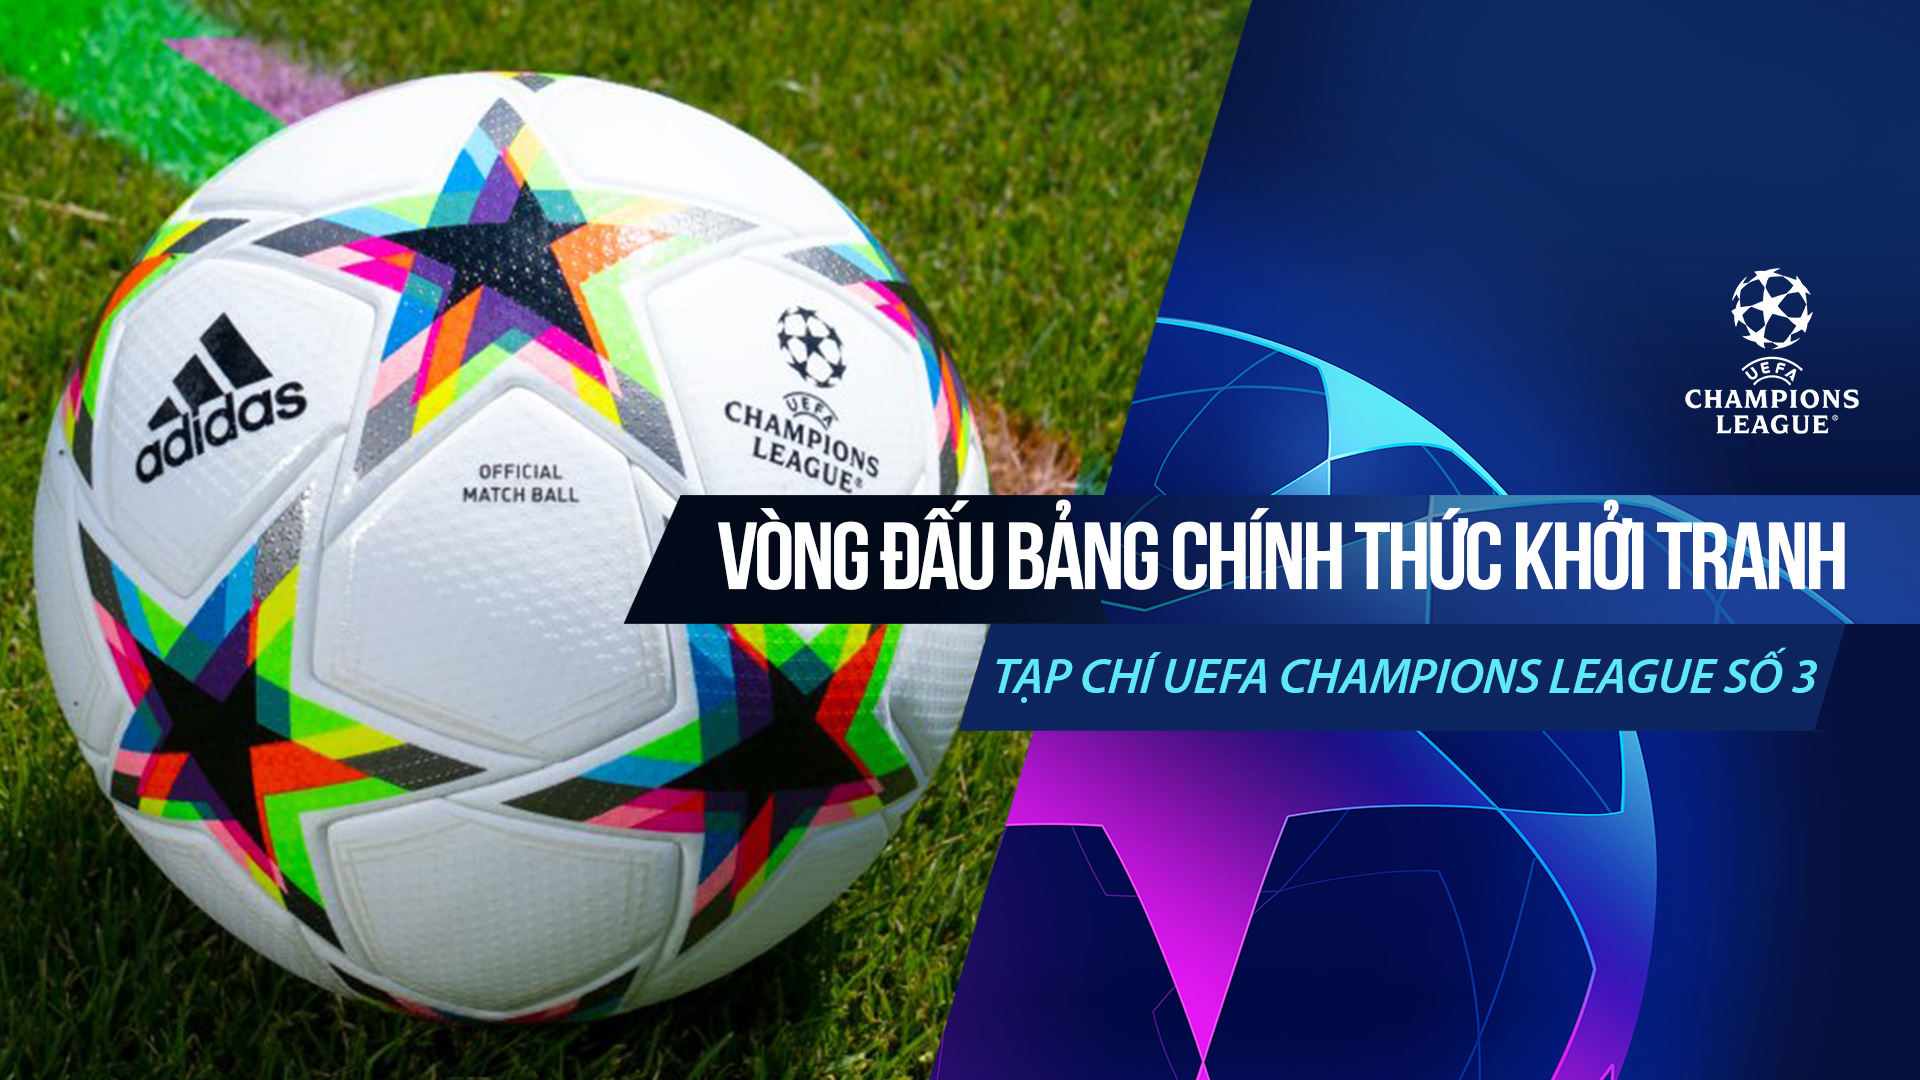 Tạp chí UEFA Champions League số 3 - Champions League